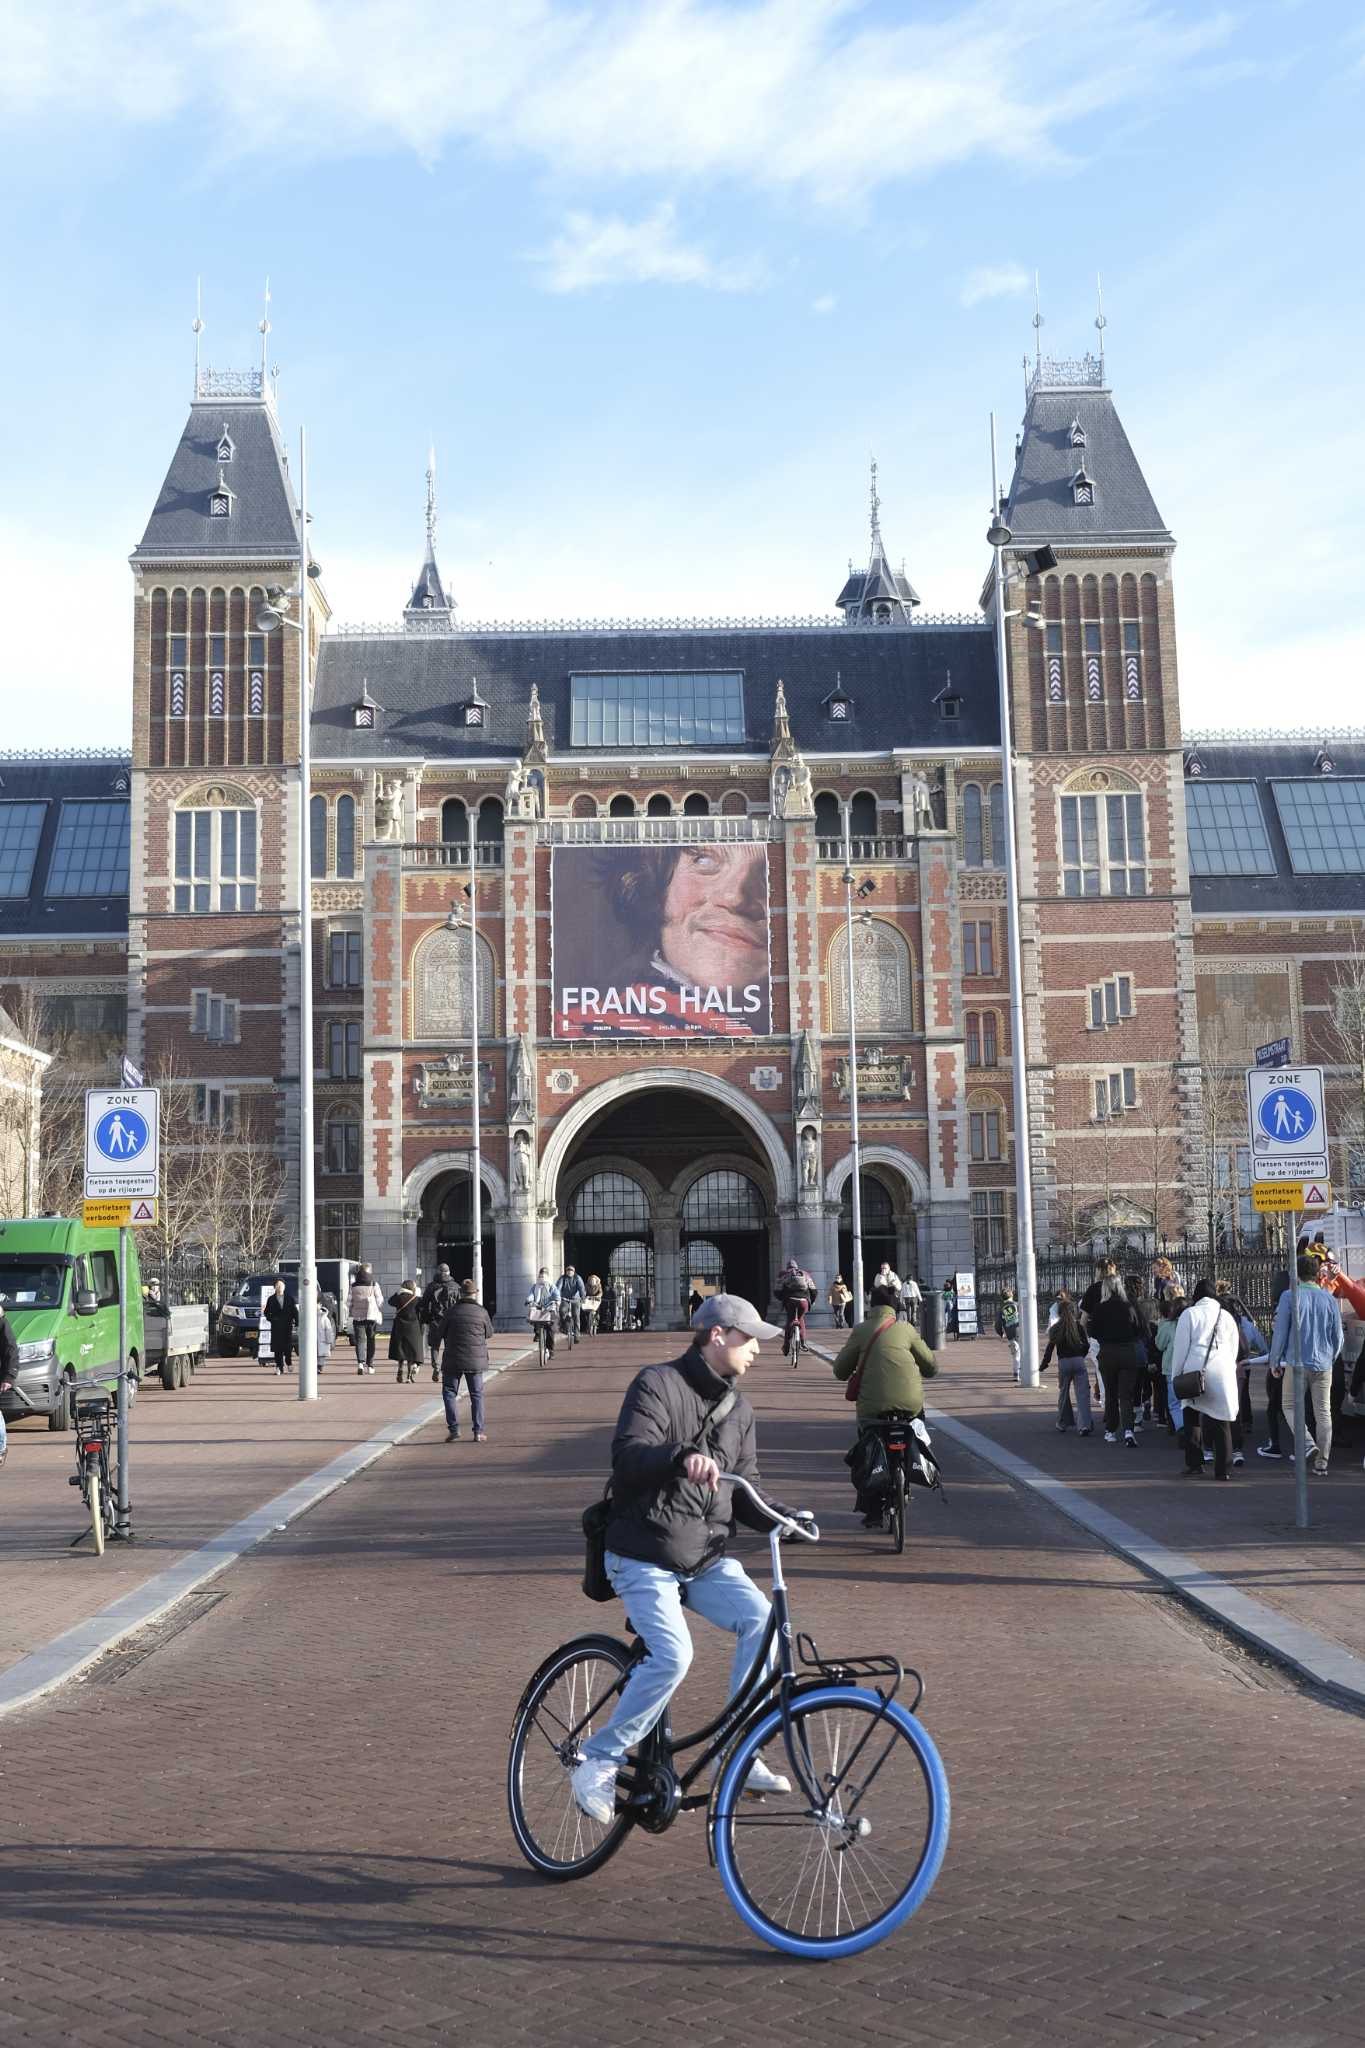 Na Rembrandt en Vermeer krijgt de Nederlandse meester Frans Hals een grote tentoonstelling in het Rijksmuseum